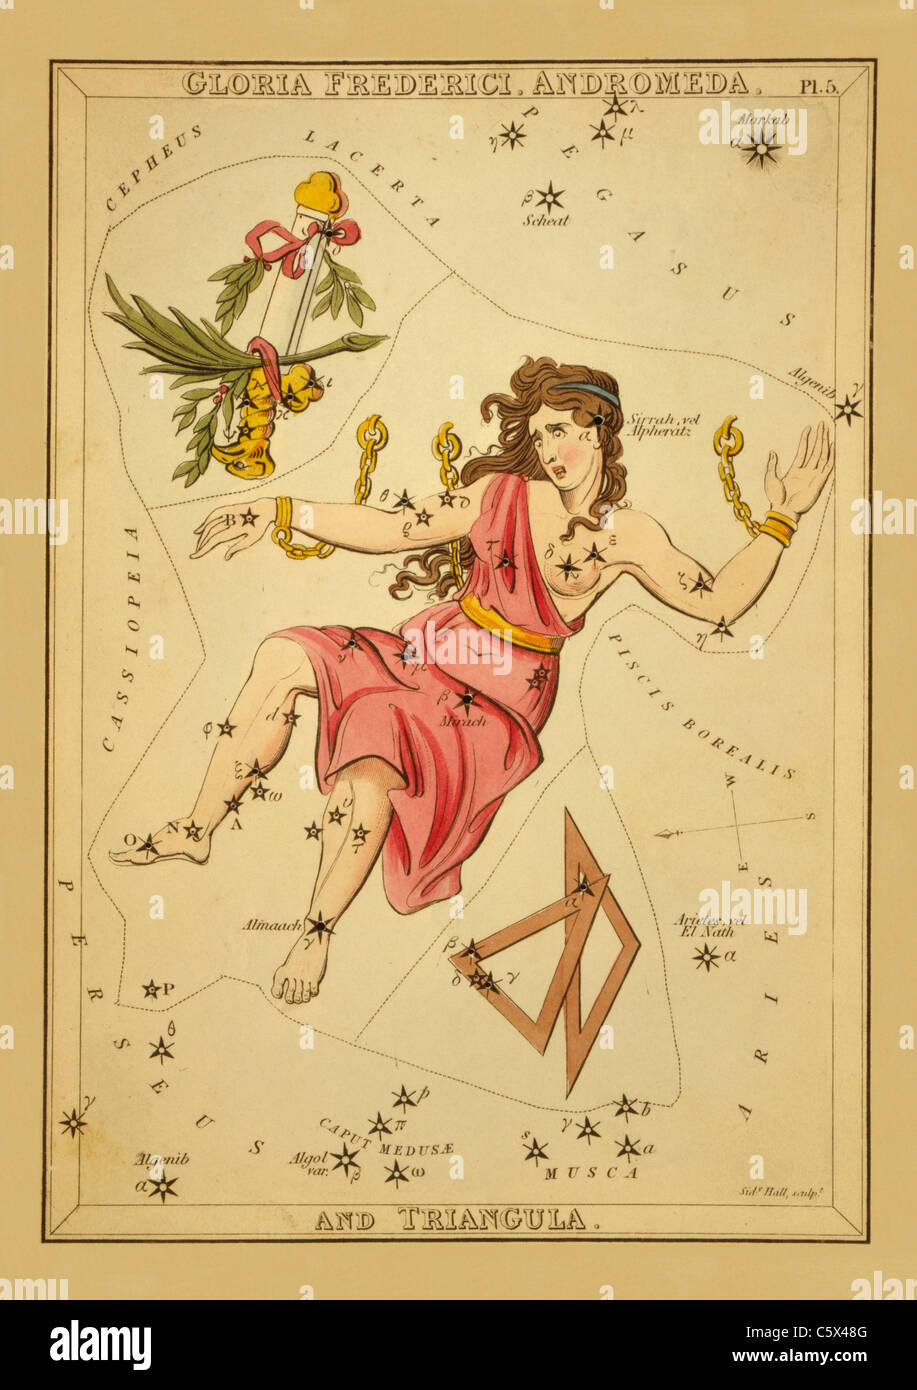 Gloria Frederici, Andrómeda y Triangula - 1825 Gráfico astronómicos Foto de stock